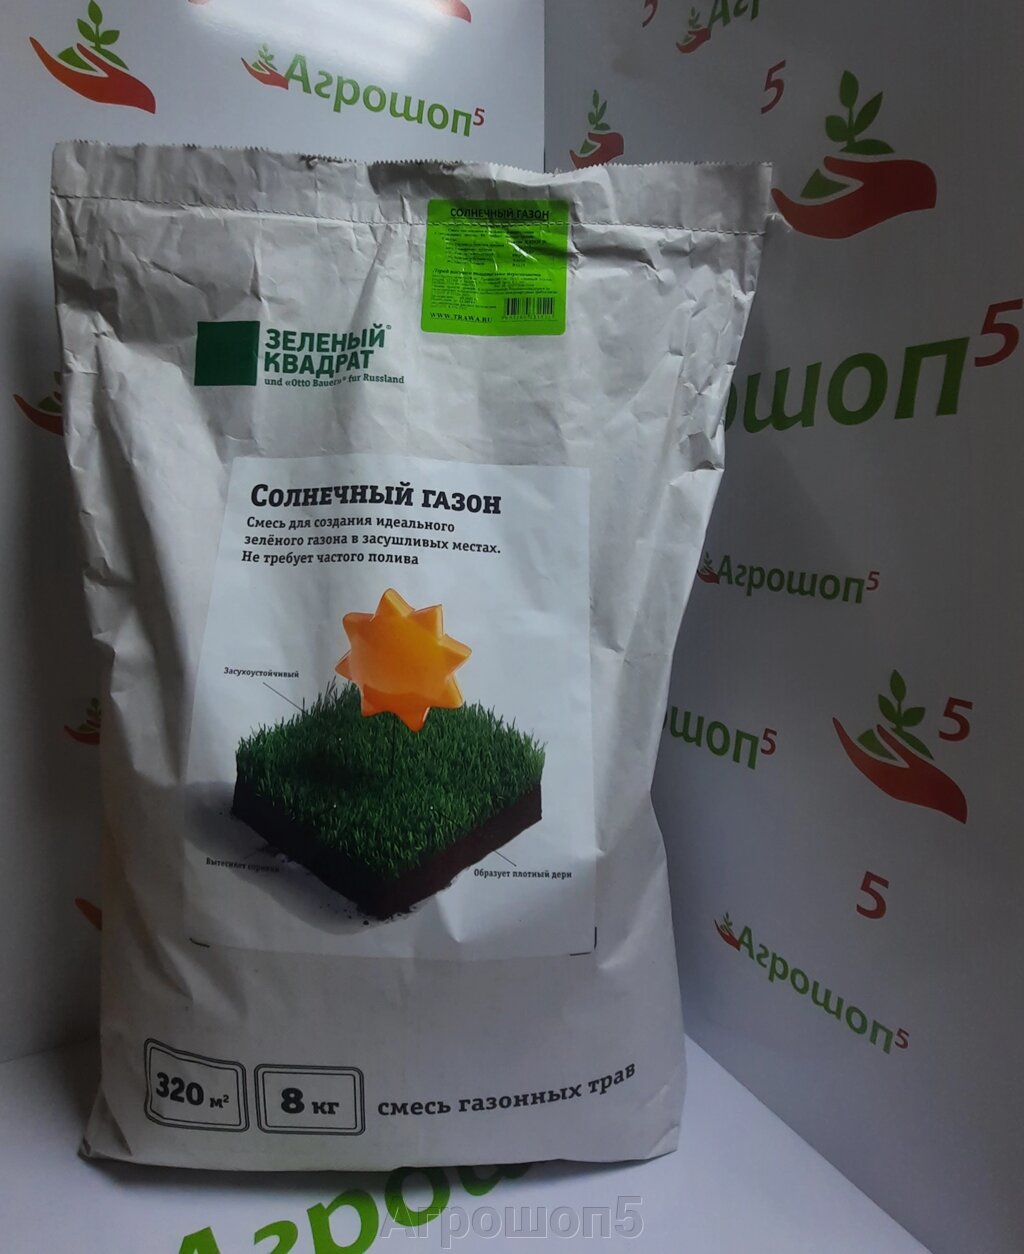 Семена газонной травы. 8 кг. СОЛНЕЧНЫЙ ГАЗОН от компании Агрошоп5 - фото 1